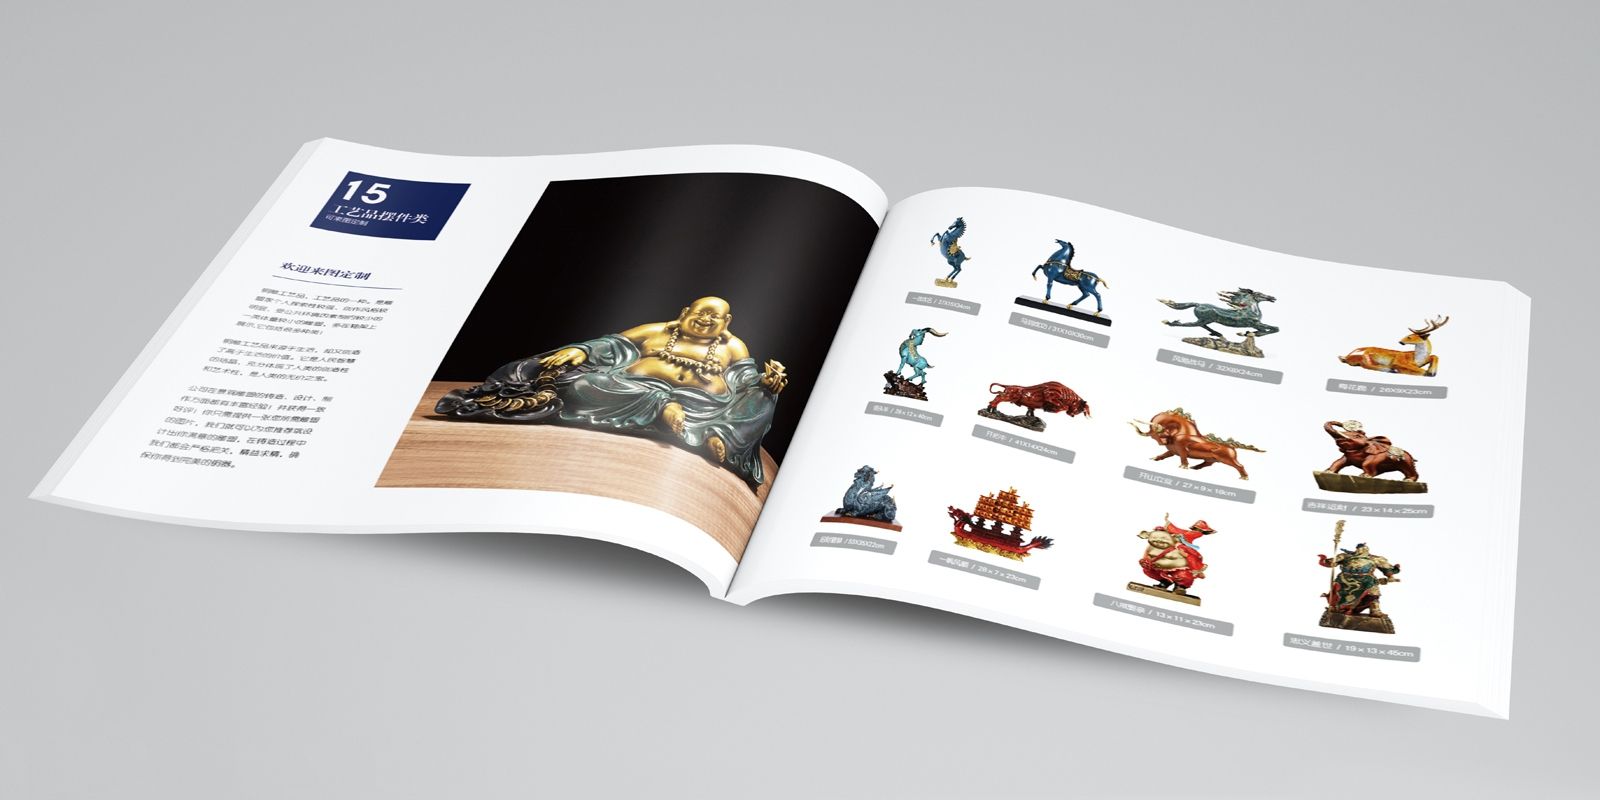 青铜铸造、铜雕公司产品画册设计 飞特网 原创画册设计